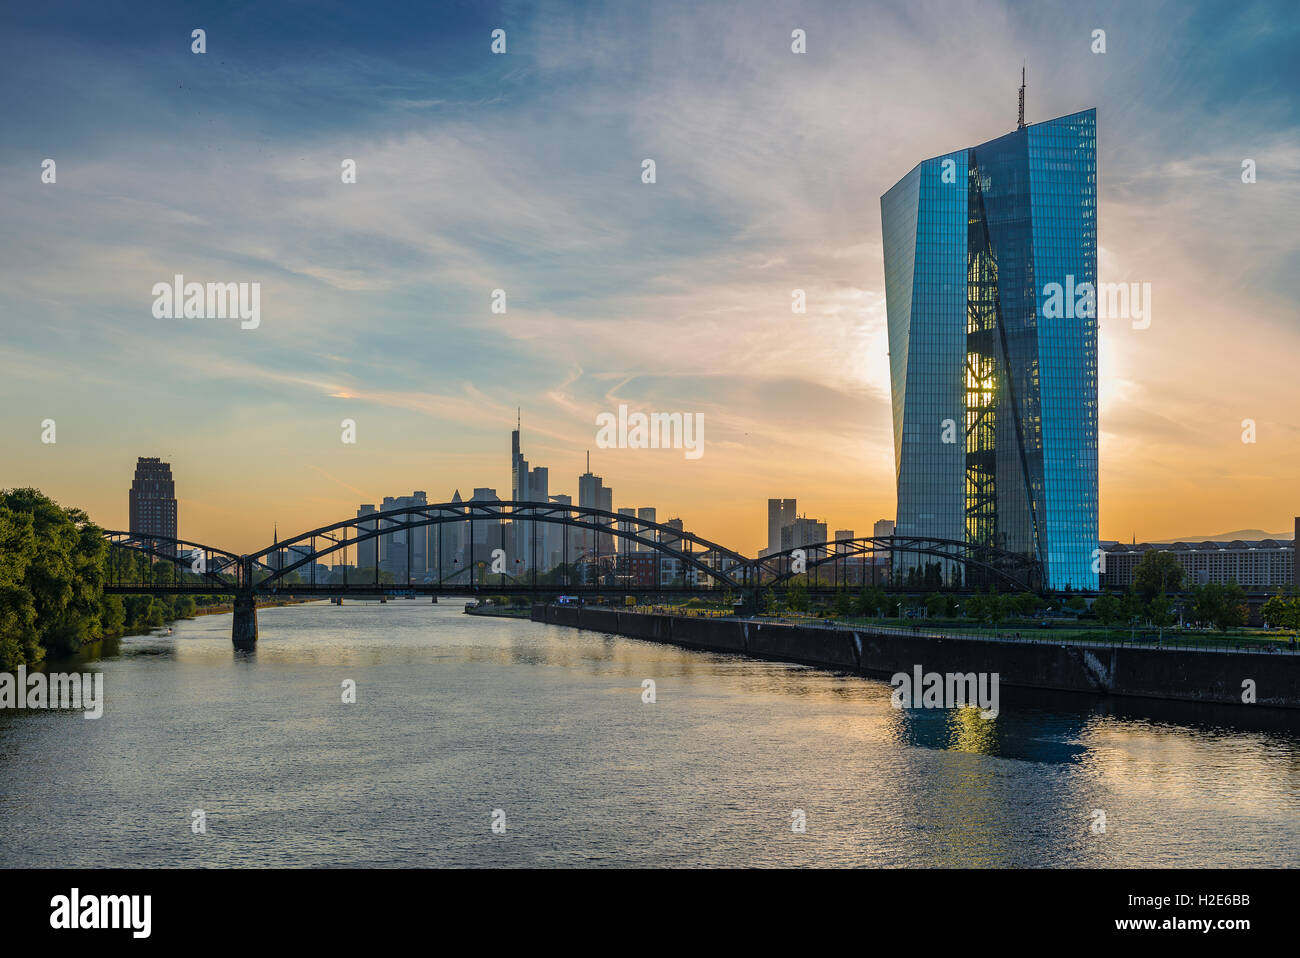 Banque centrale européenne, BCE, lumière du soir, rétroéclairé, Skyline, Frankfurt am Main, Hesse, Allemagne Banque D'Images